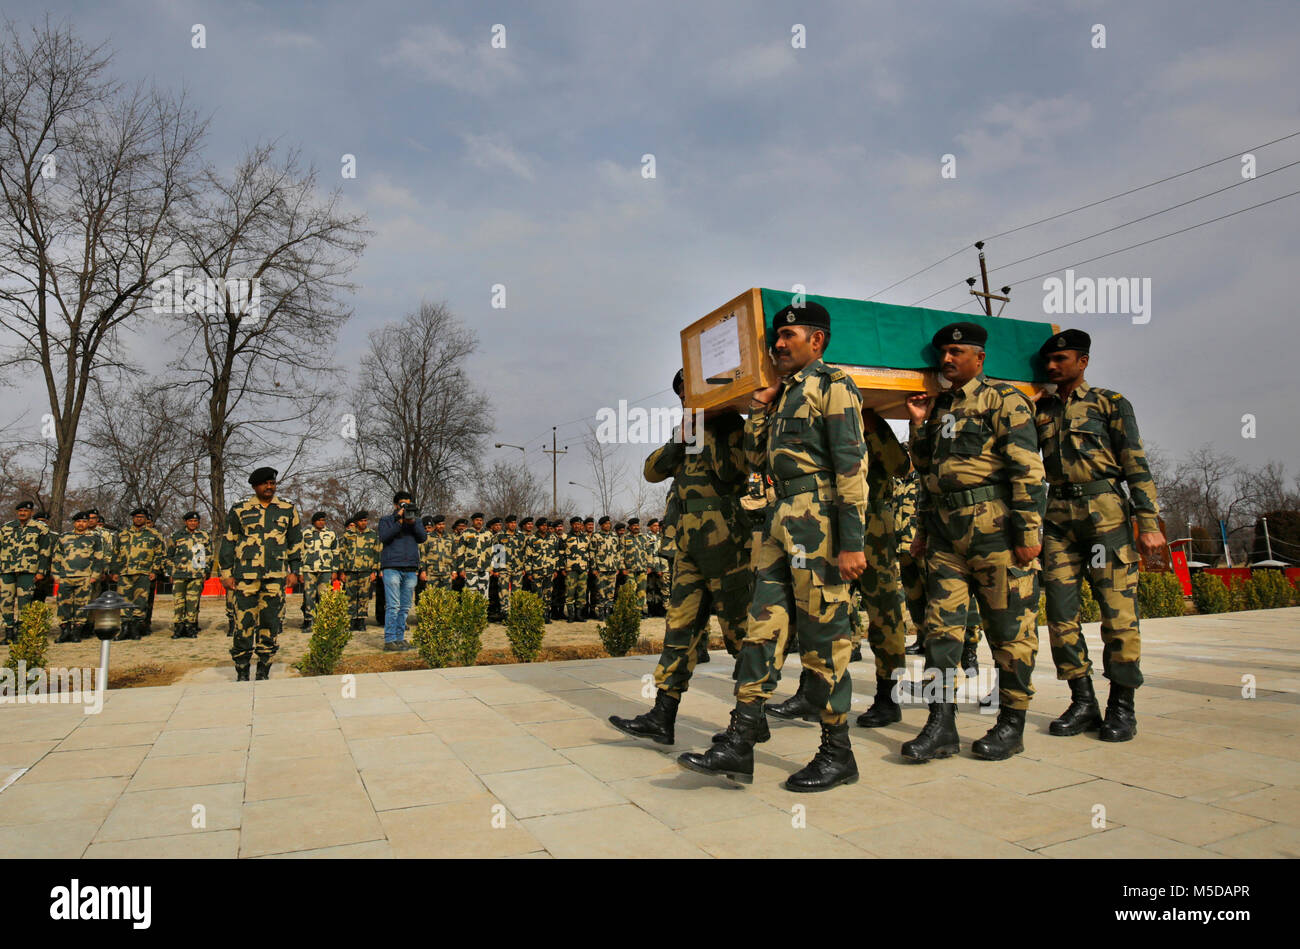 Srinagar, Indiano-controllato del Kashmir. Il 22 febbraio, 2018. Le guardie di frontiera indiana di sicurezza alle frontiere forza (BSF) portano la bara del loro collega durante la sua corona di cerimonia di posa in corrispondenza della loro base camp nella periferia di Srinagar city, la capitale estiva di Indiano-Kashmir controllata, 22 febbraio, 2018. Una guardia di frontiera indiana di BSF è stato ucciso in cottura al settore Tanghdar frontiera nel distretto di Kupwara sulla linea di comando (LOC) dividendo il Kashmir. Credito: Javed Dar/Xinhua/Alamy Live News Foto Stock